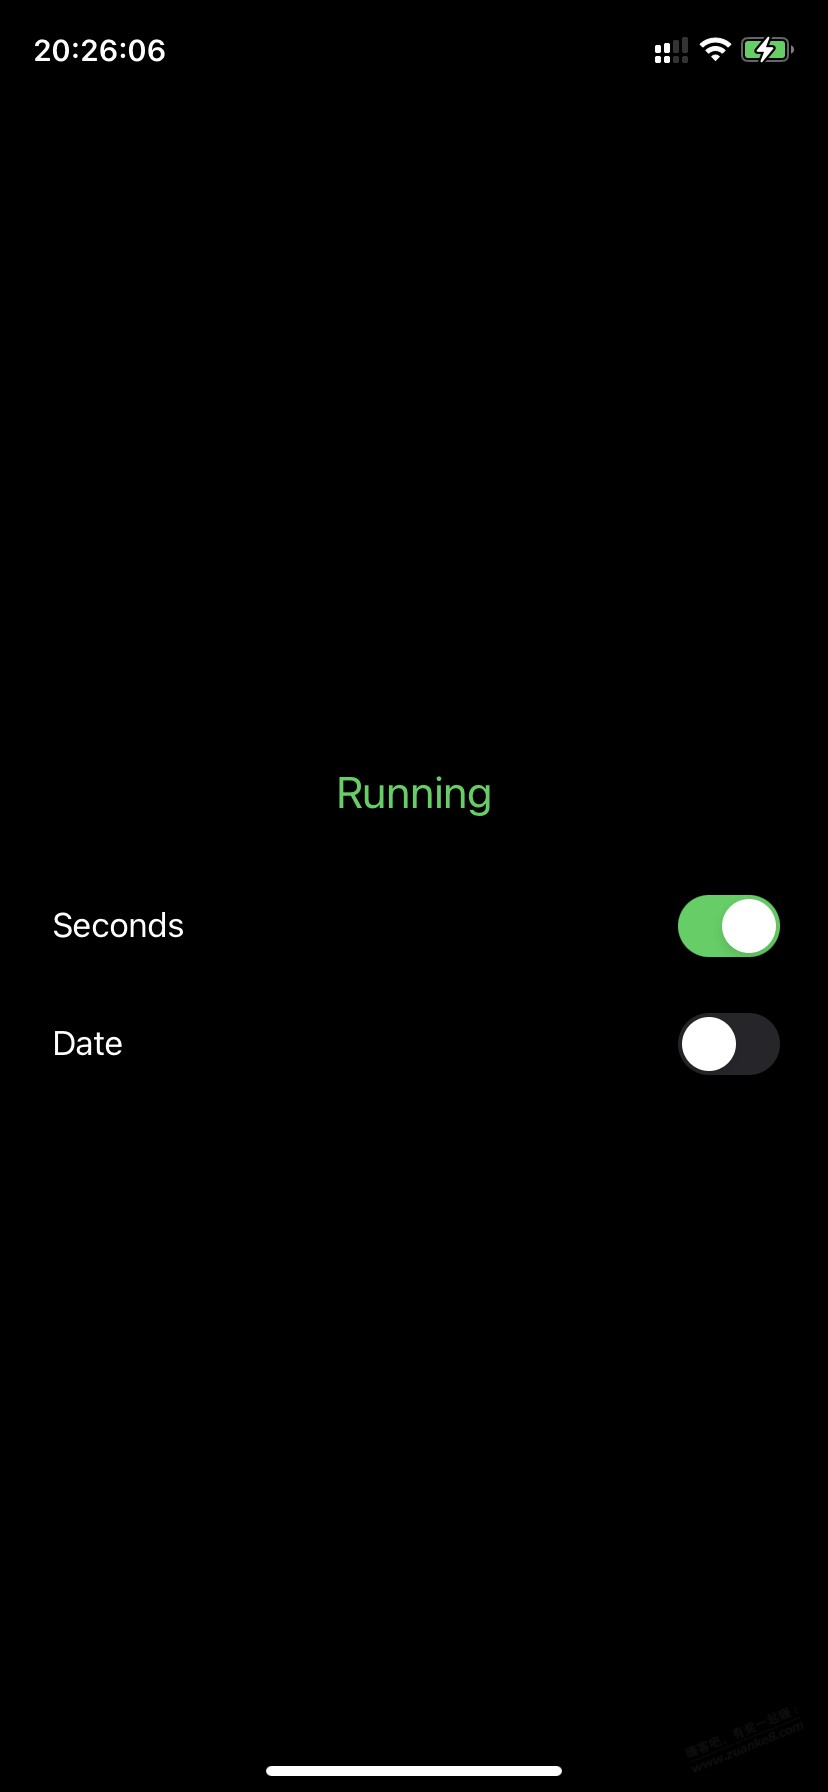 分享一个状态栏显示秒数的时间插件神器，超级简洁